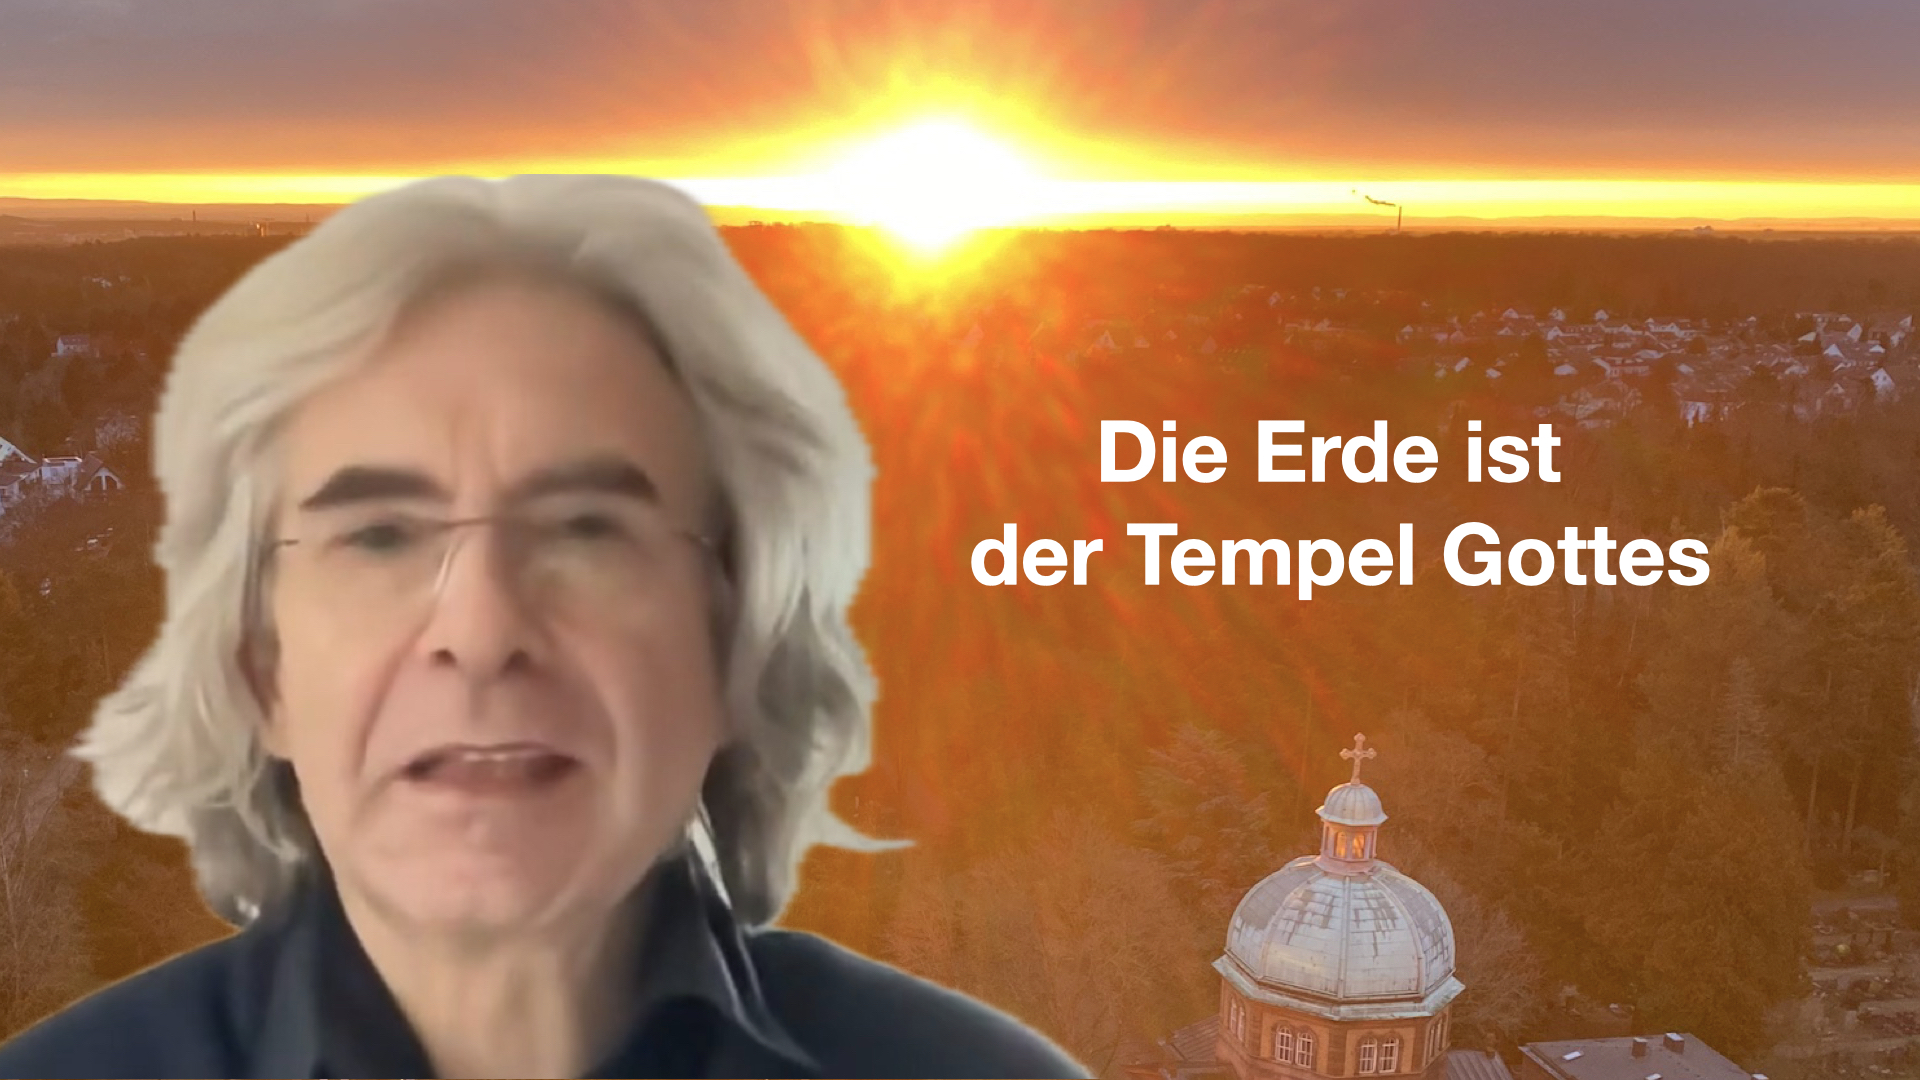 Die Erde ist der Tempel Gottes.(c) Steffen Bürger